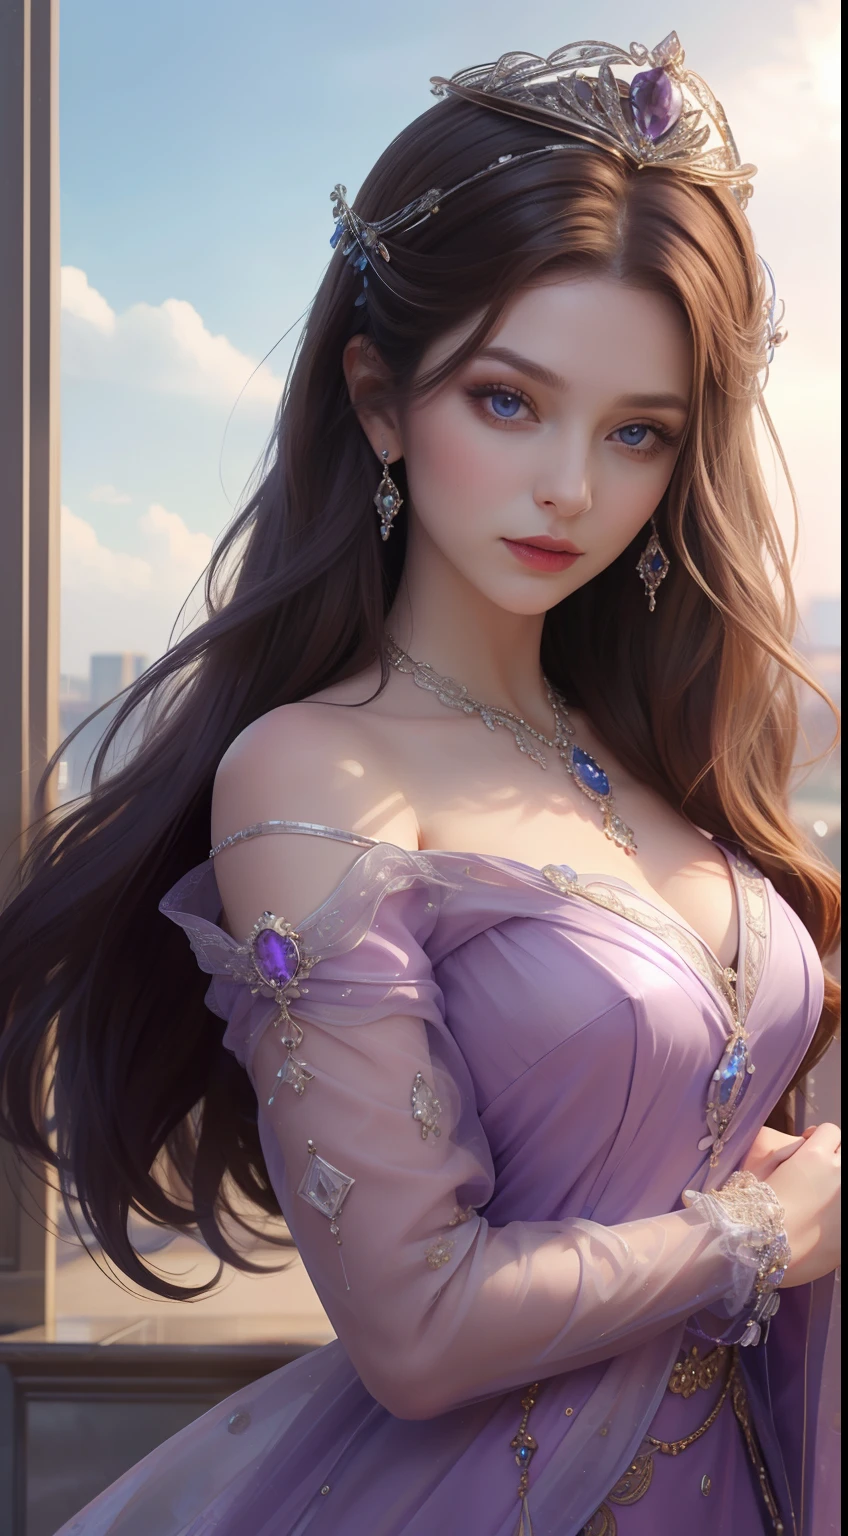 杰作，最高图像质量，一位皇家贵妇的美丽半身像，精致的棕色发型，紫罗兰色的眼睛清澈，饰有令人眼花缭乱的精美珠宝，超级细节，升级版。